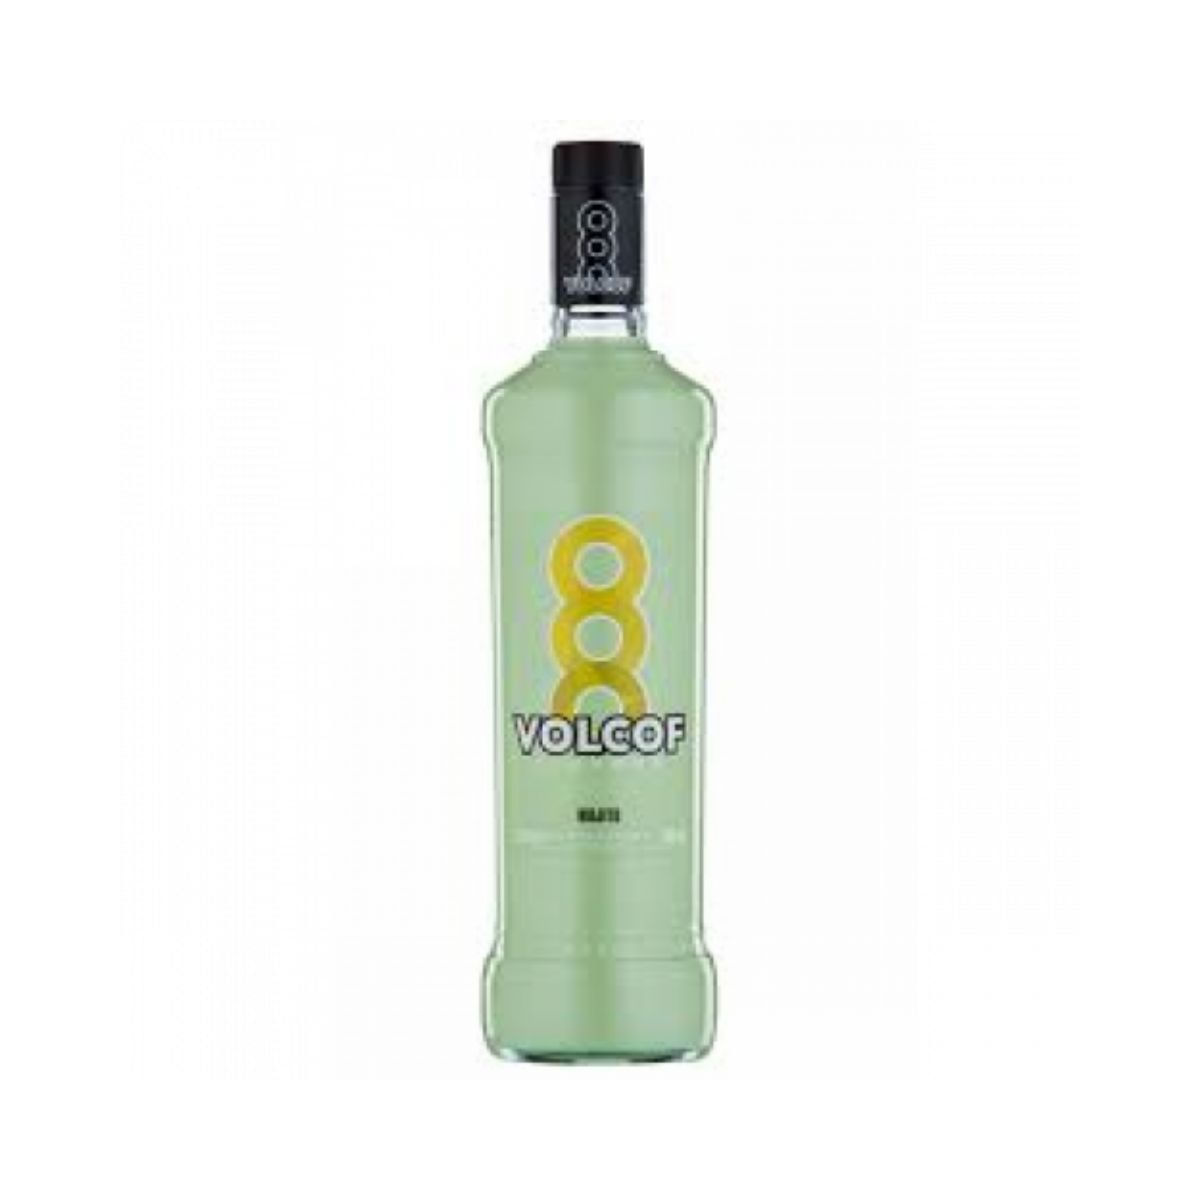 coquetel-de-vodka-sabor-mojito-volcof-900-ml-1.jpg